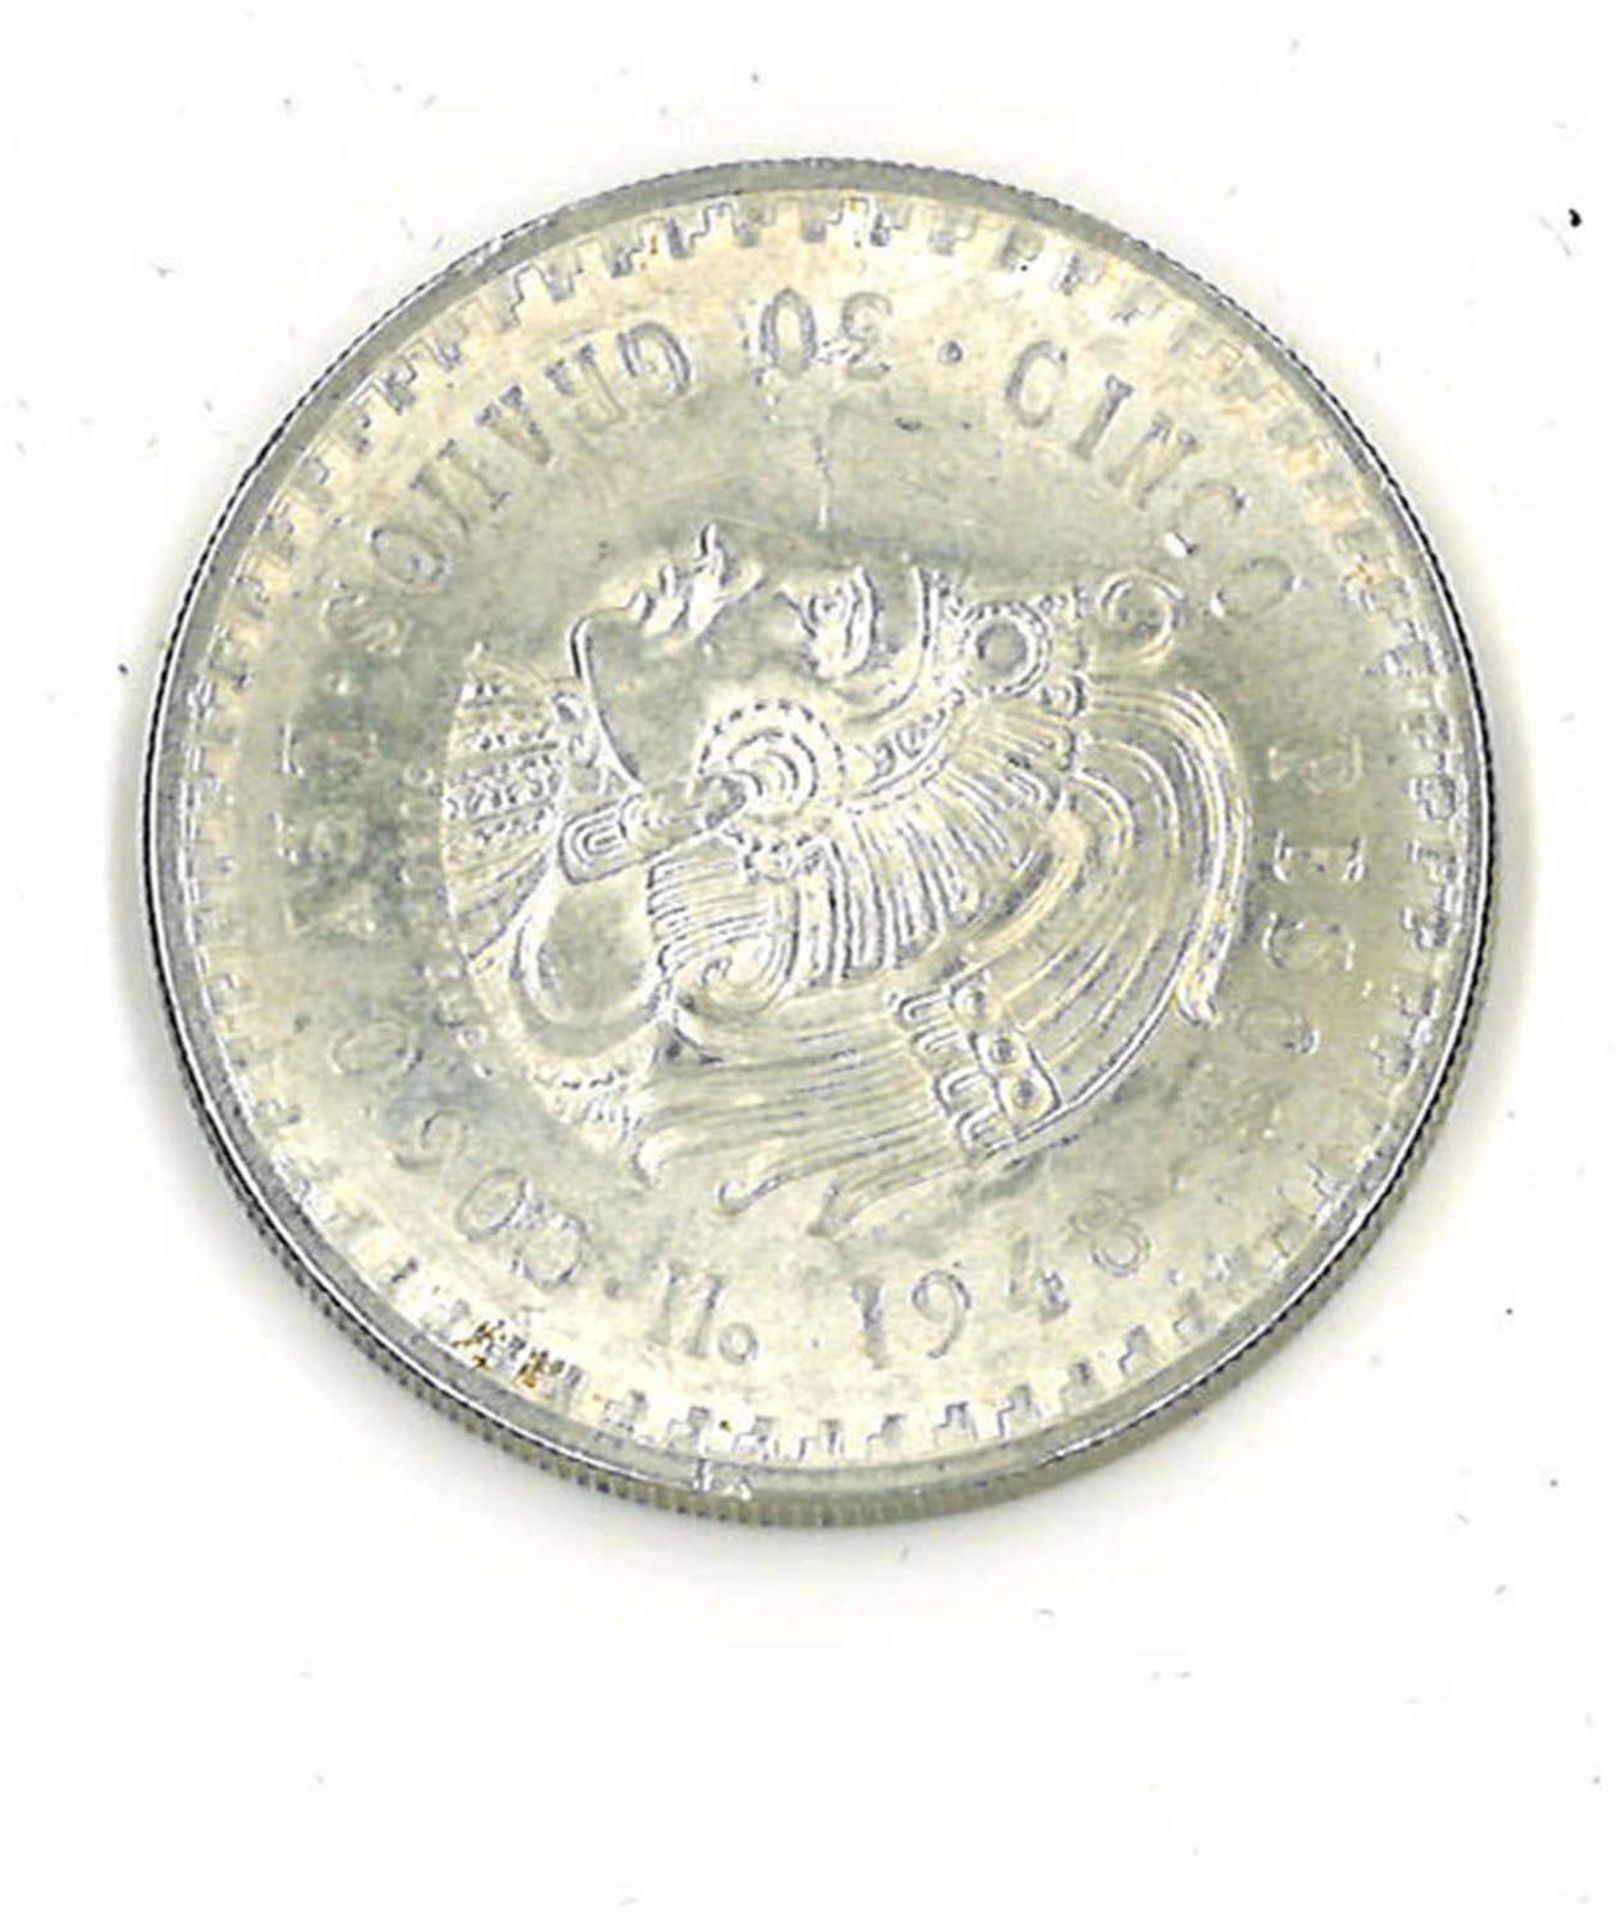 Mexico Silbermünze 1948, 5 Pesos. Katalog Nr. 465Mexico silver coin 1948, 5 pesos. Catalog No. 465